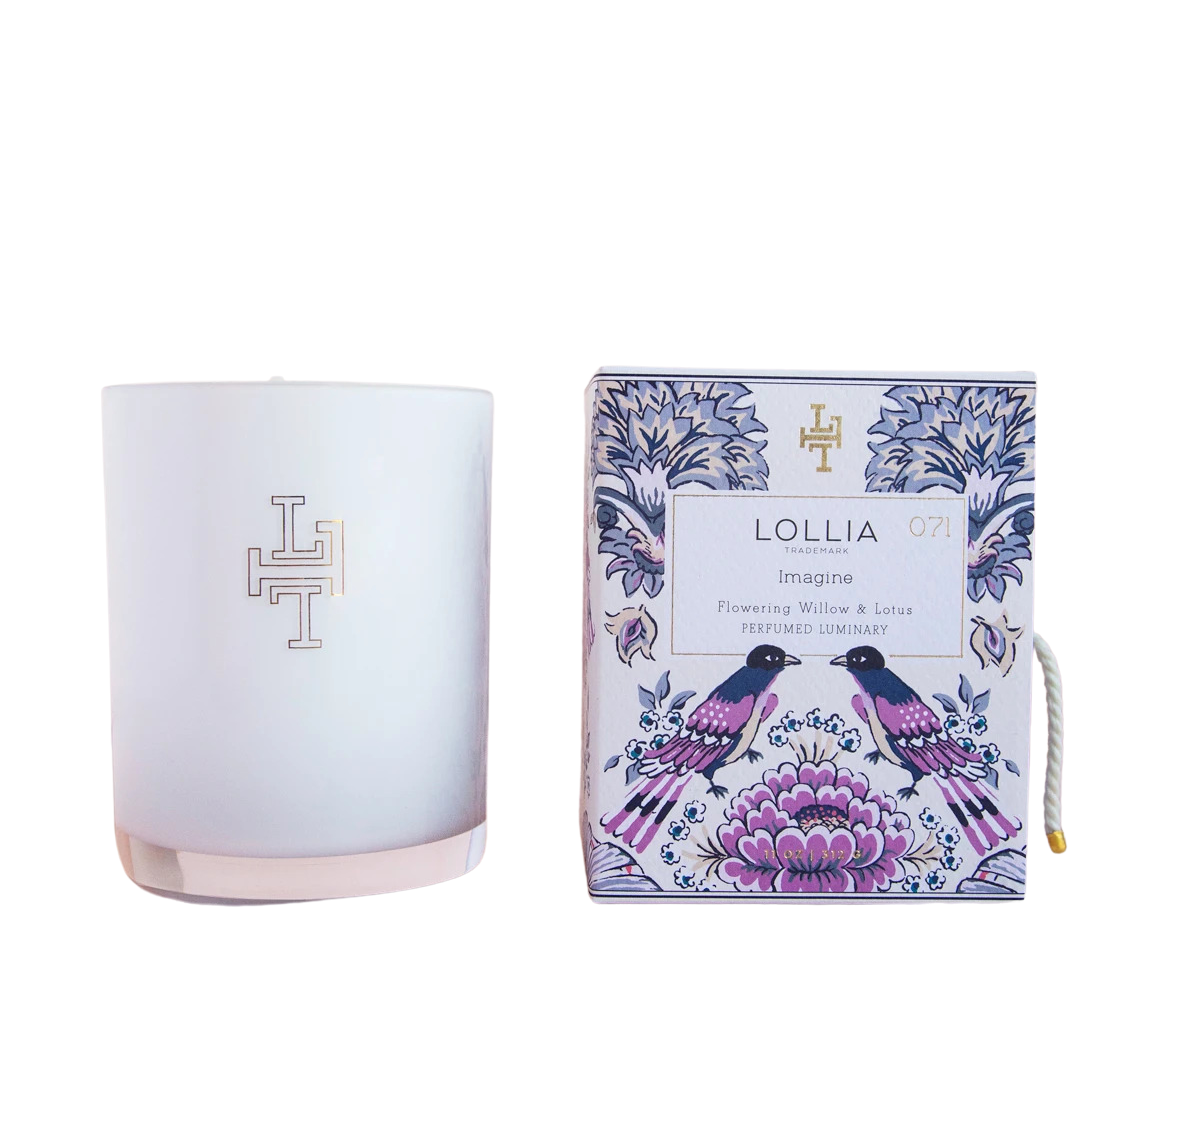 Lollia Imagine No. 71 Perfumed Luminary Candle